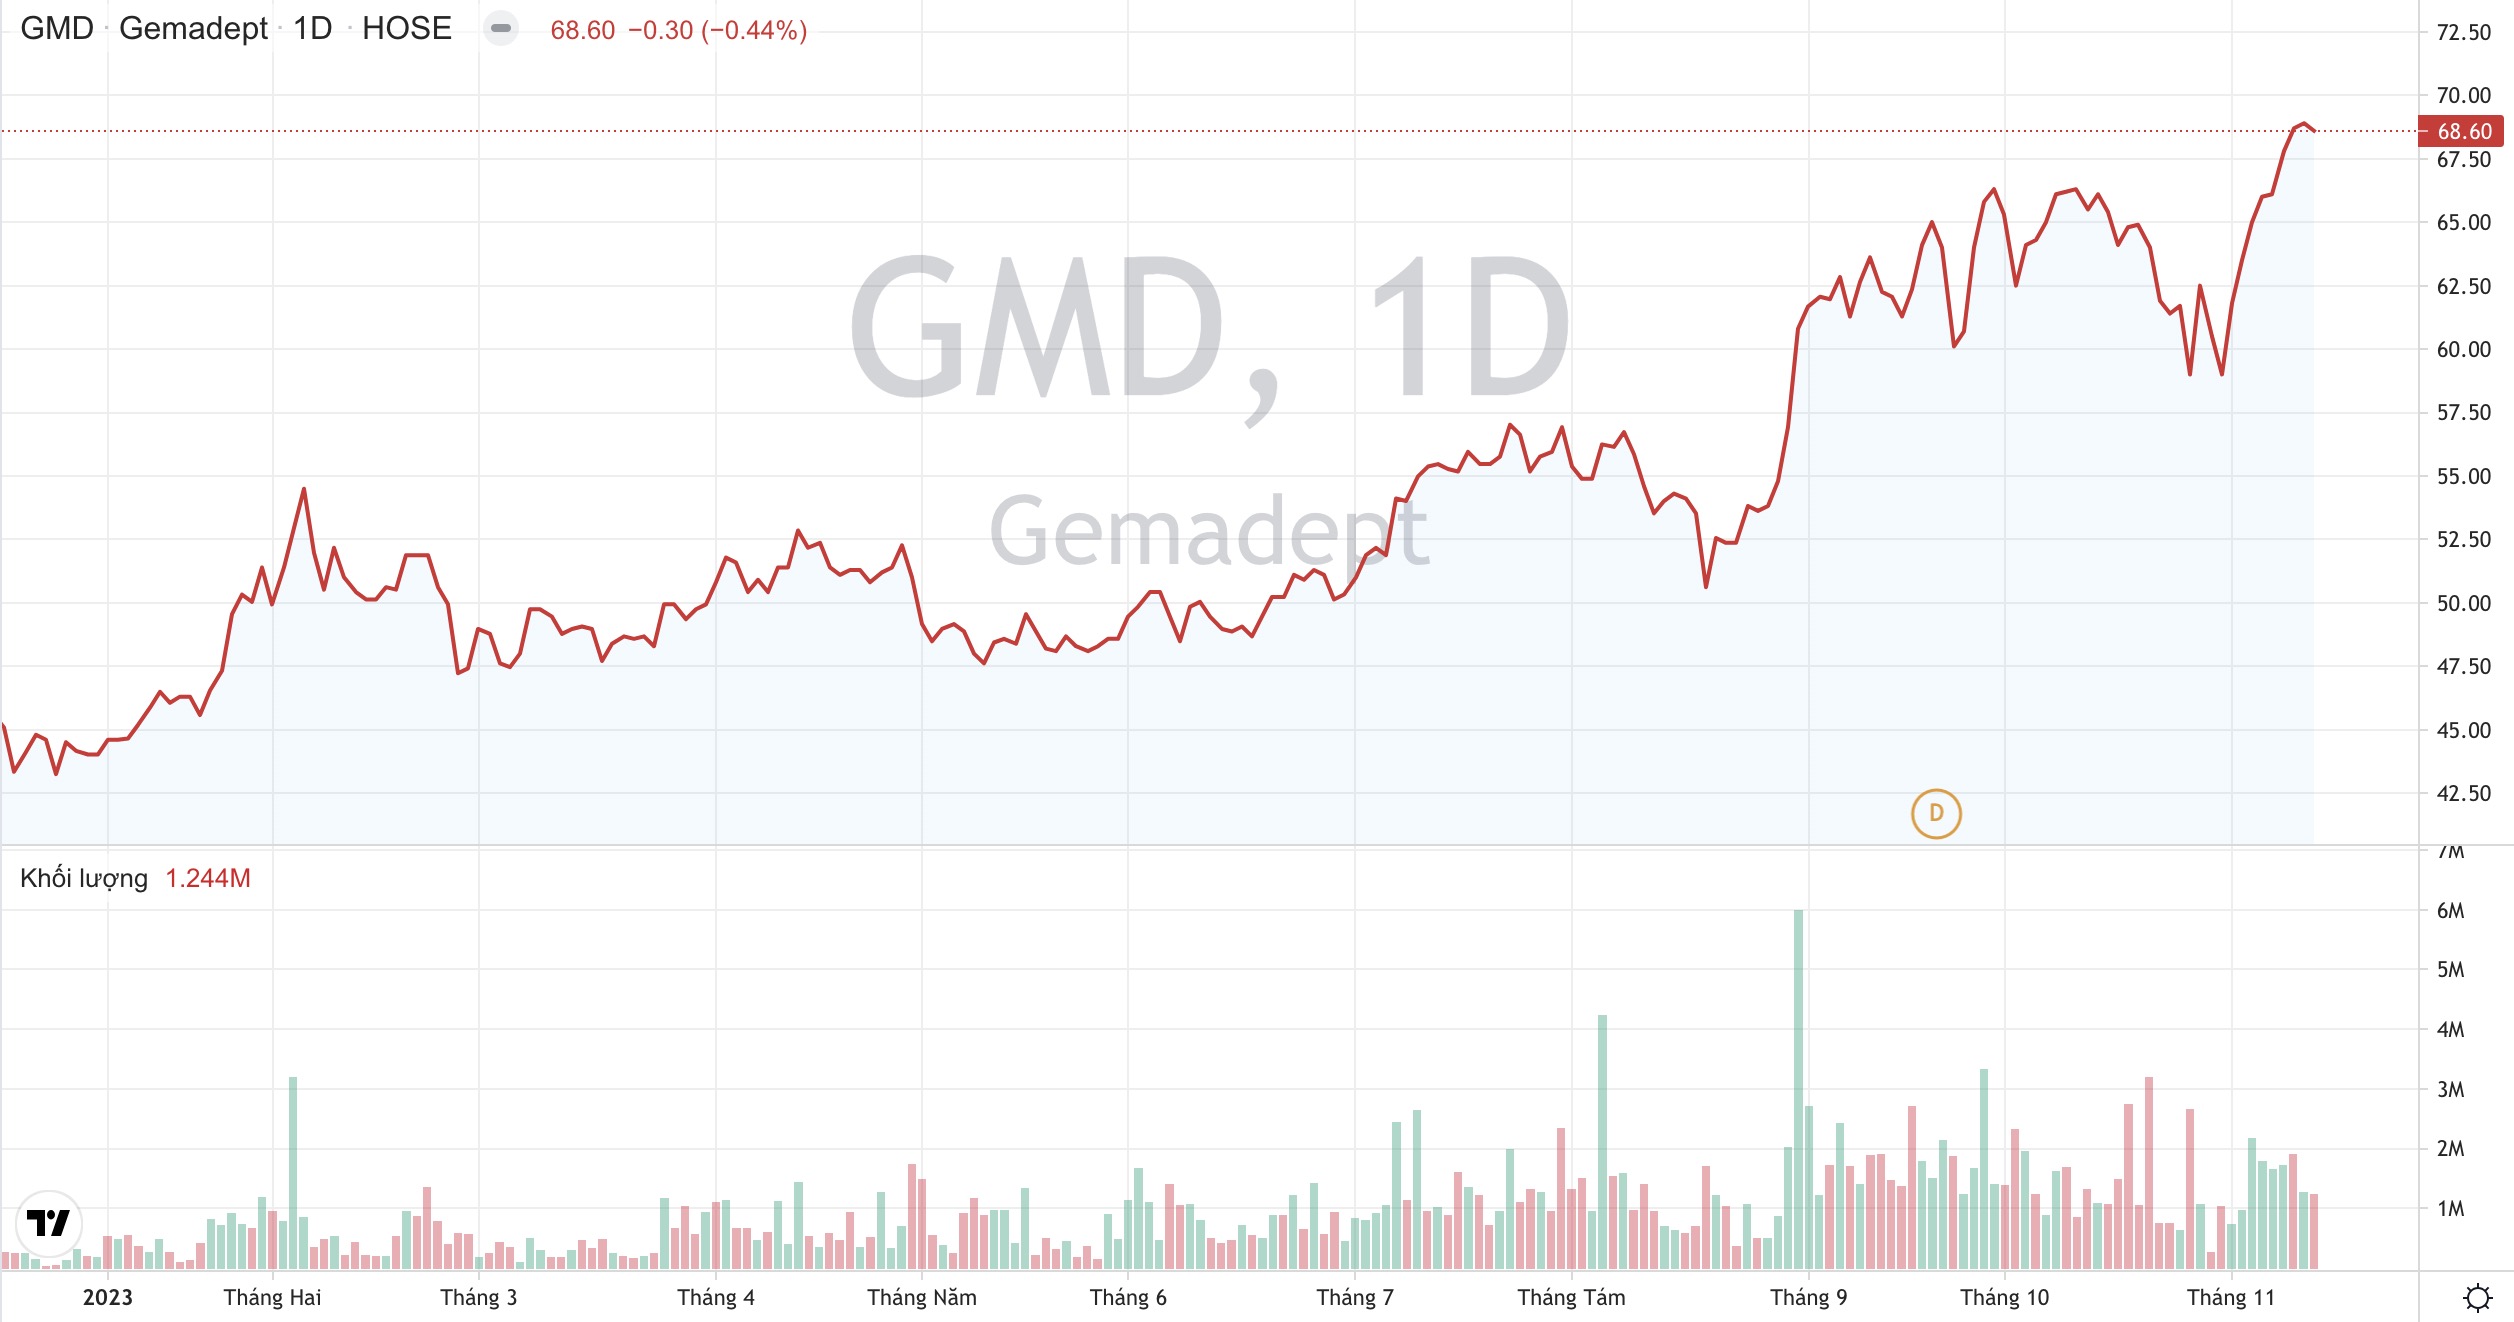 Lãi ròng quý 4 của Cảng Gemadept GMD dự báo tăng trưởng mạnh 3